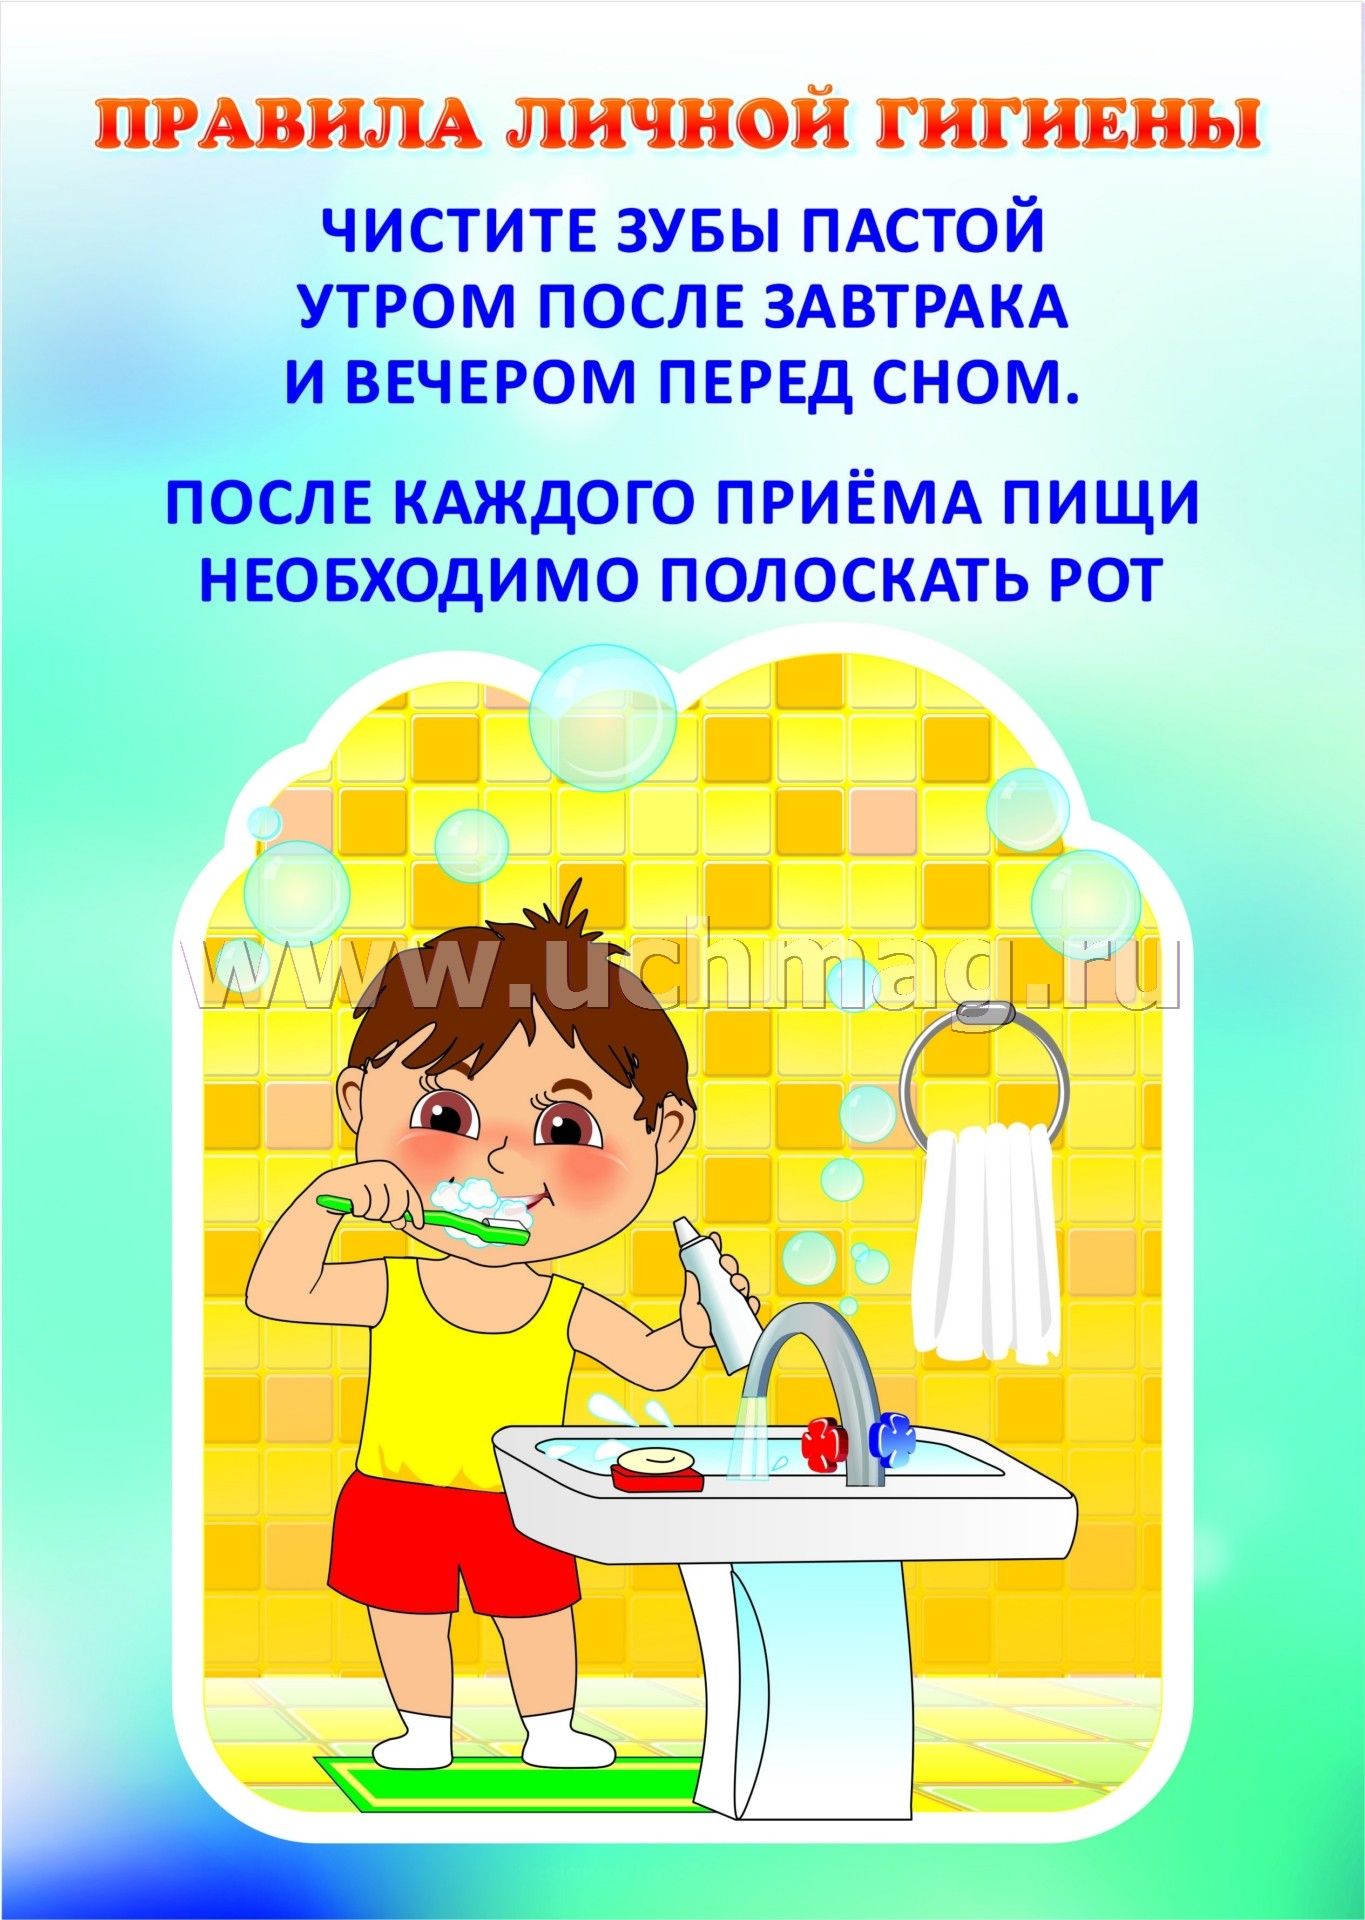 Гигиенические про. Правила гигиены для детей. Правила личной гигиены для детей. Гигиена для детей дошкольного возраста. Плакаты по гигиене для детей.